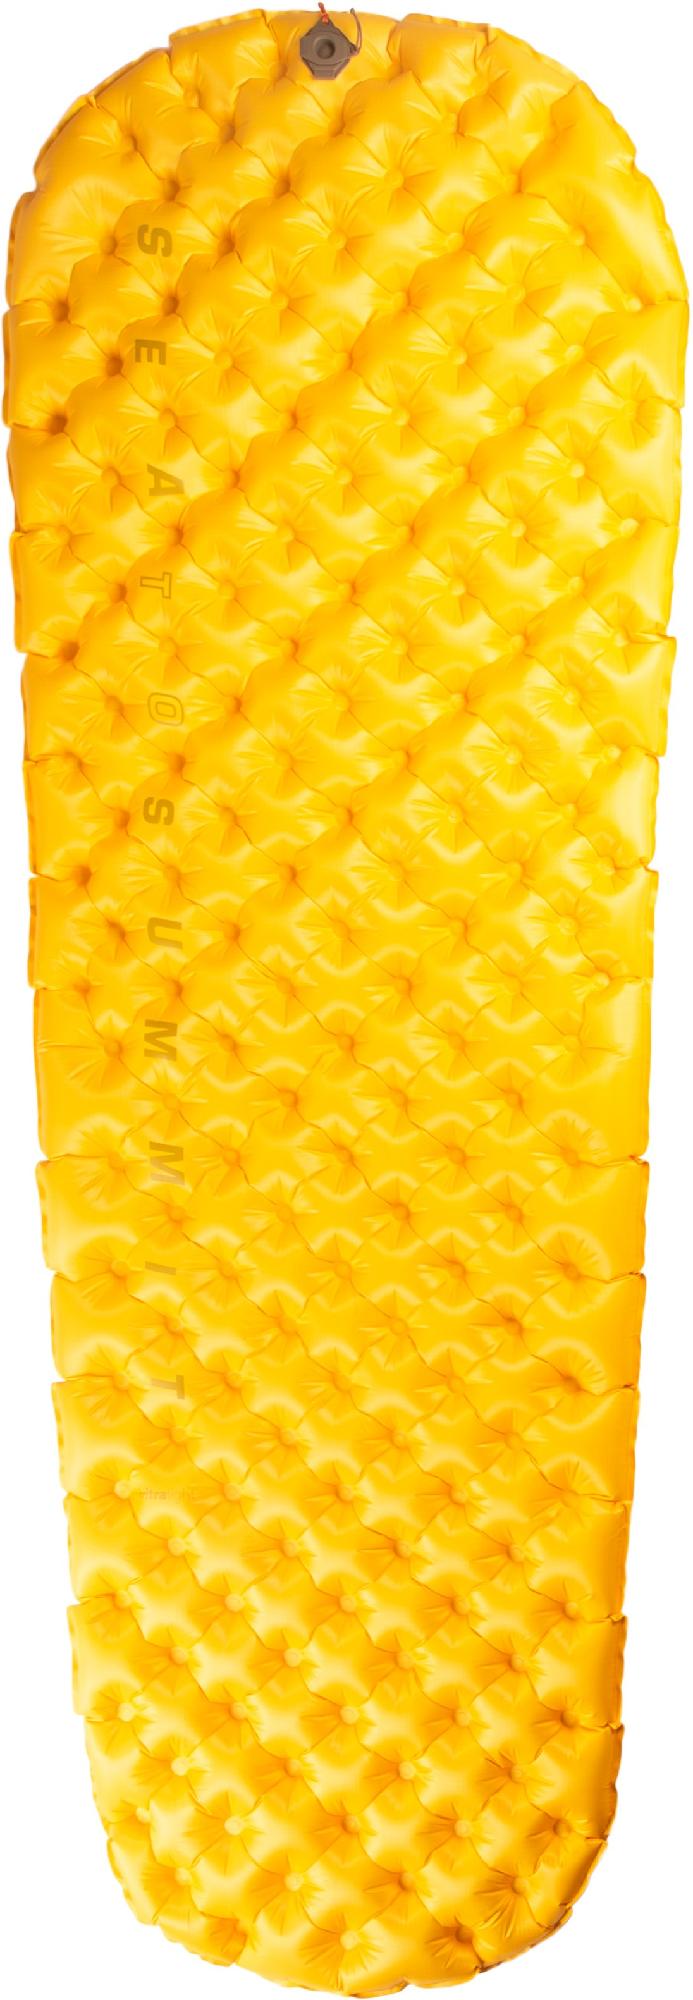 Сверхлегкий воздушный спальный коврик Sea to Summit, желтый фото